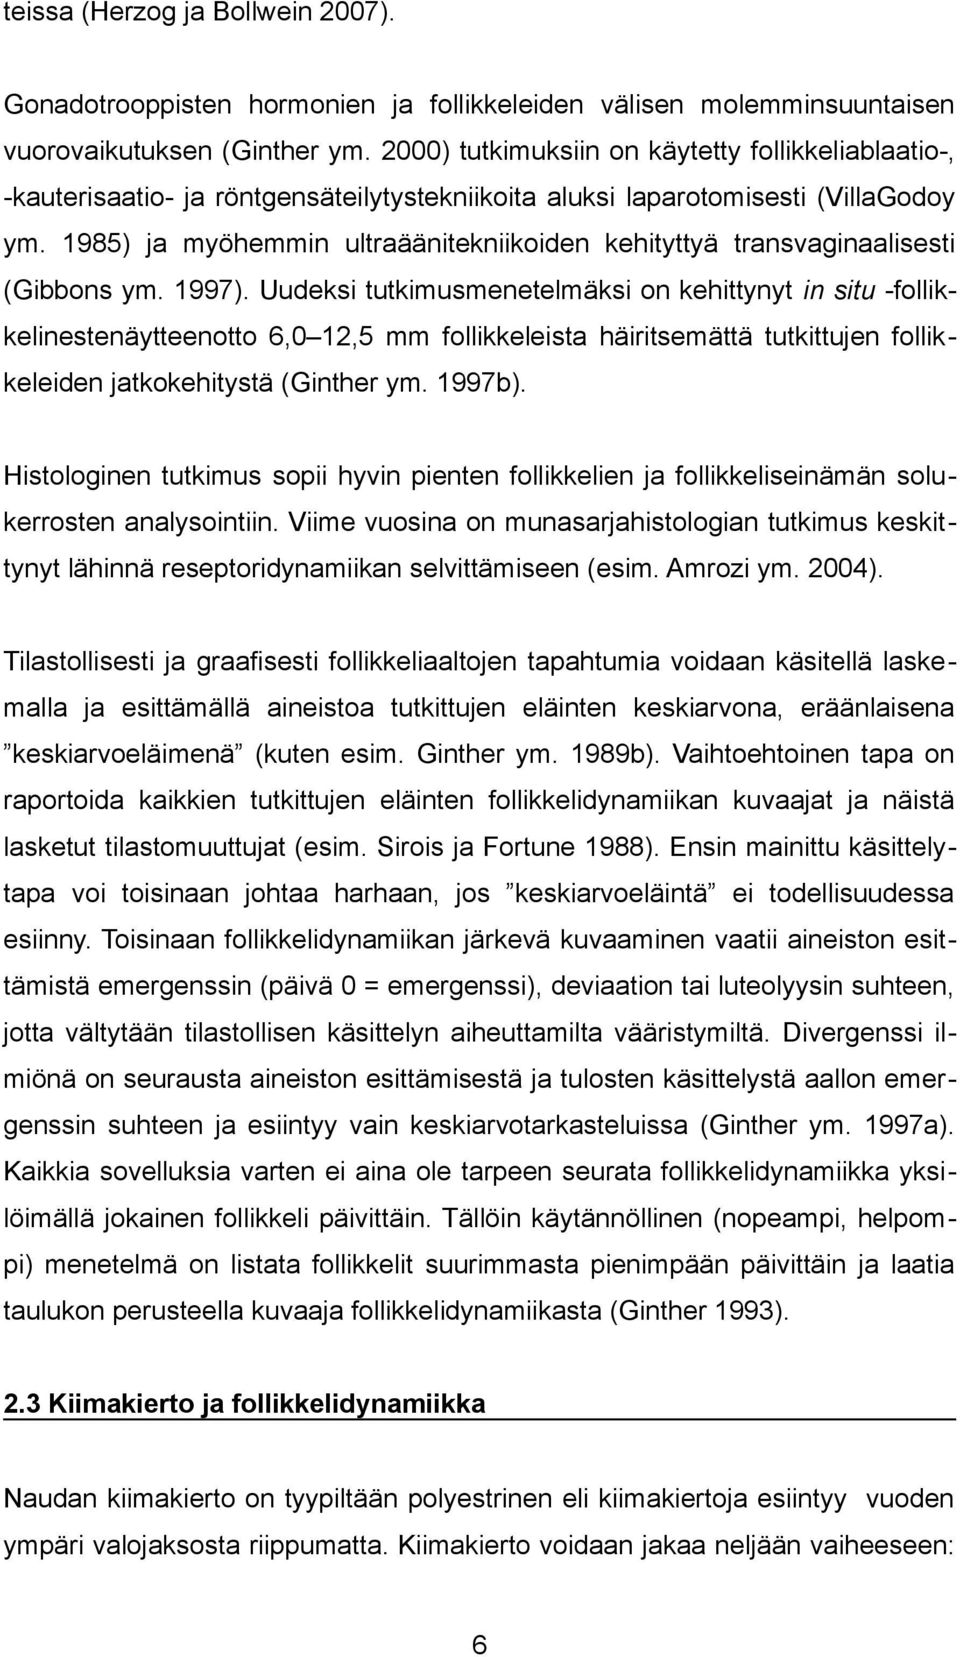 1985) ja myöhemmin ultraäänitekniikoiden kehityttyä transvaginaalisesti (Gibbons ym. 1997).